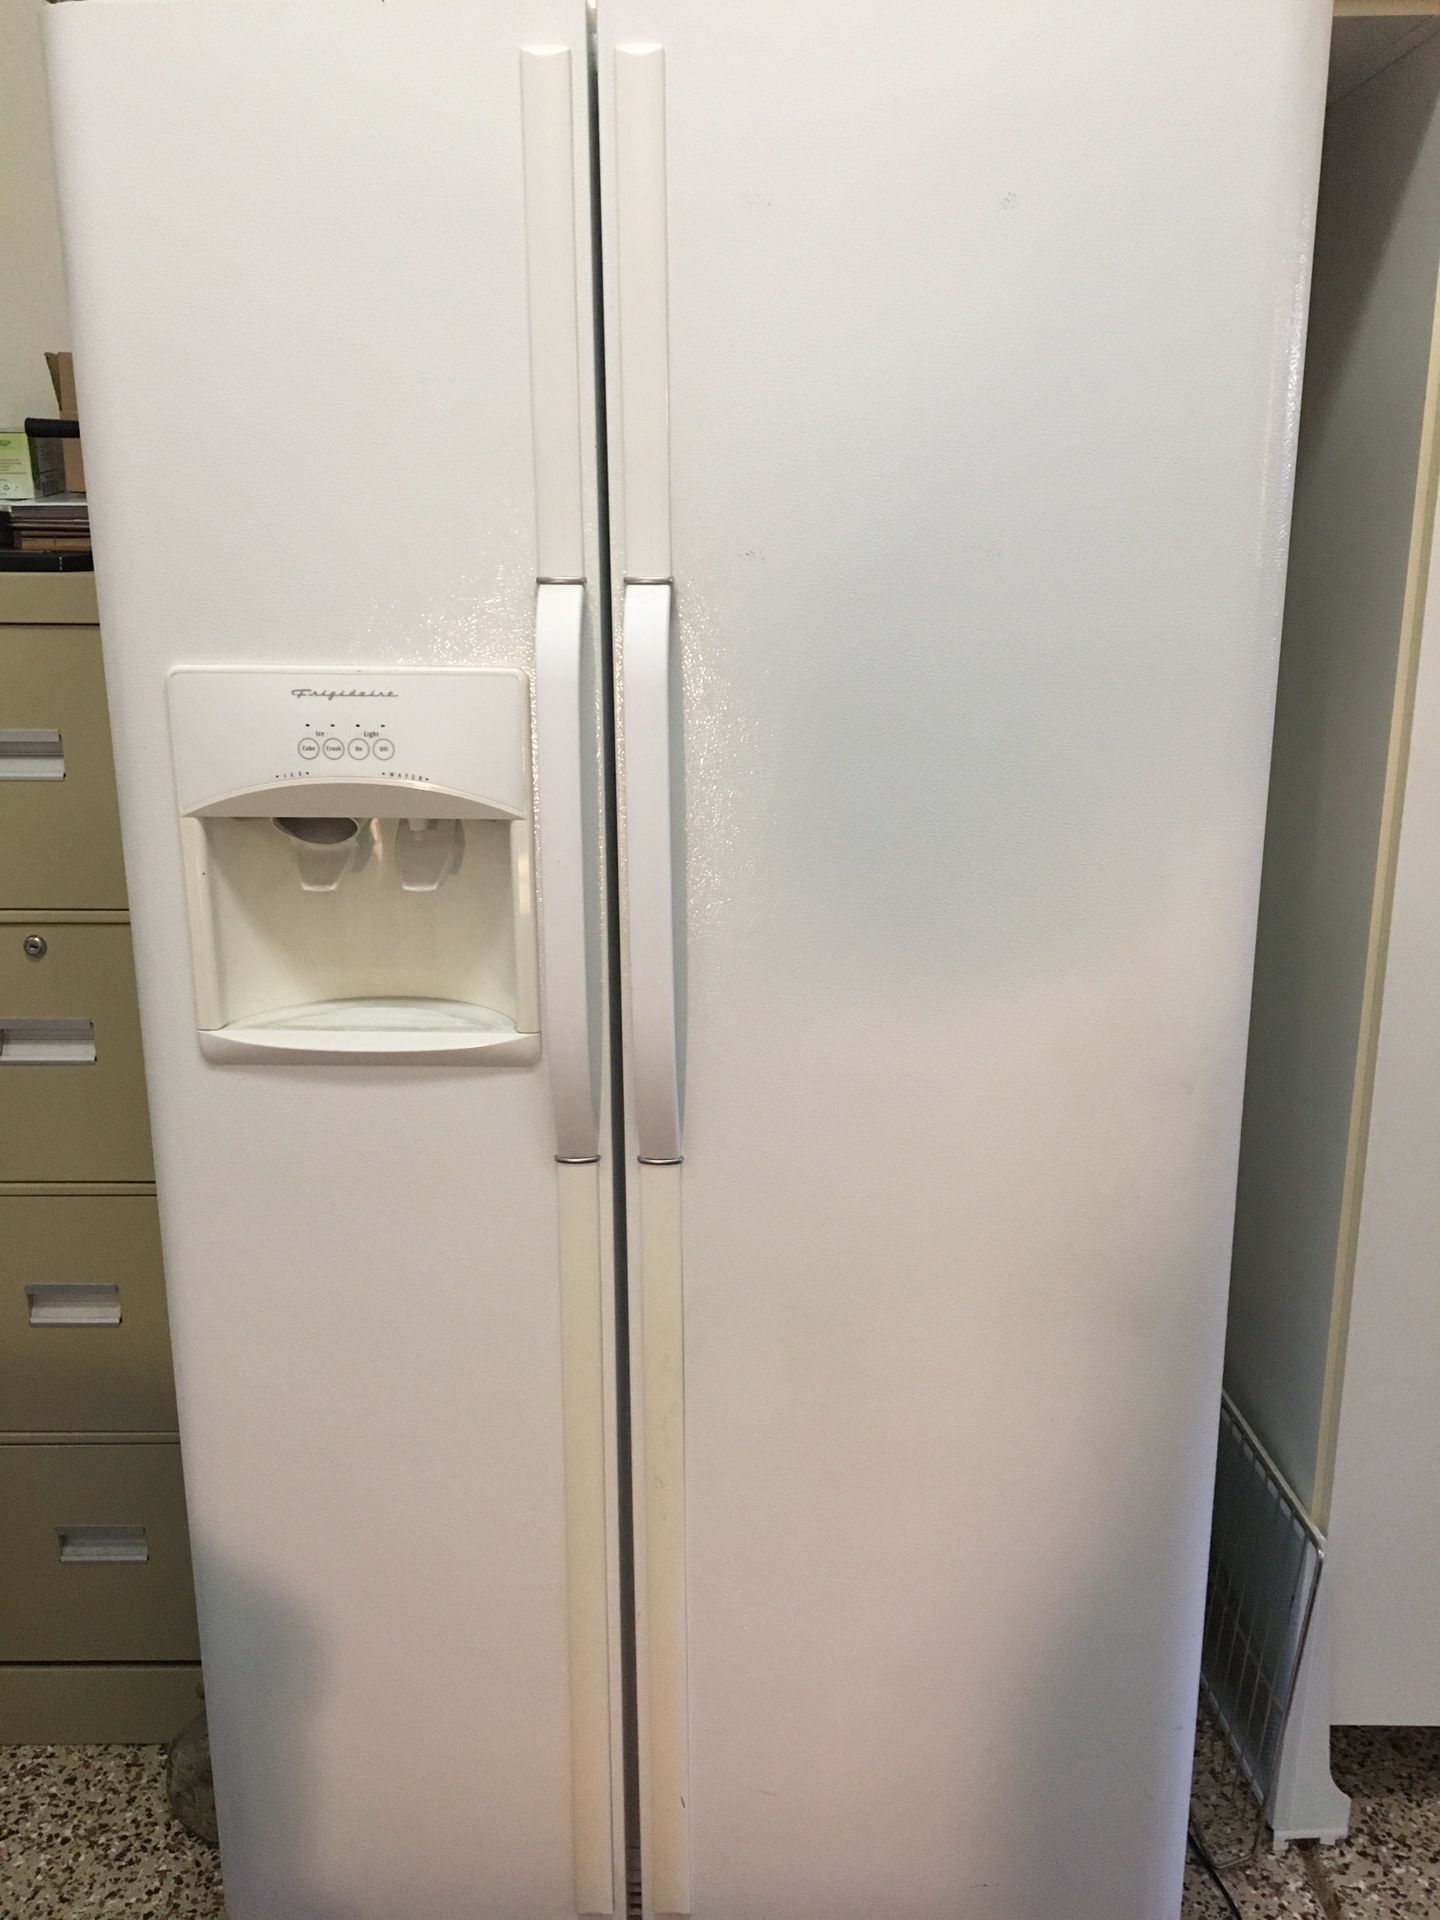 Side by side Frigidaire refrigerator